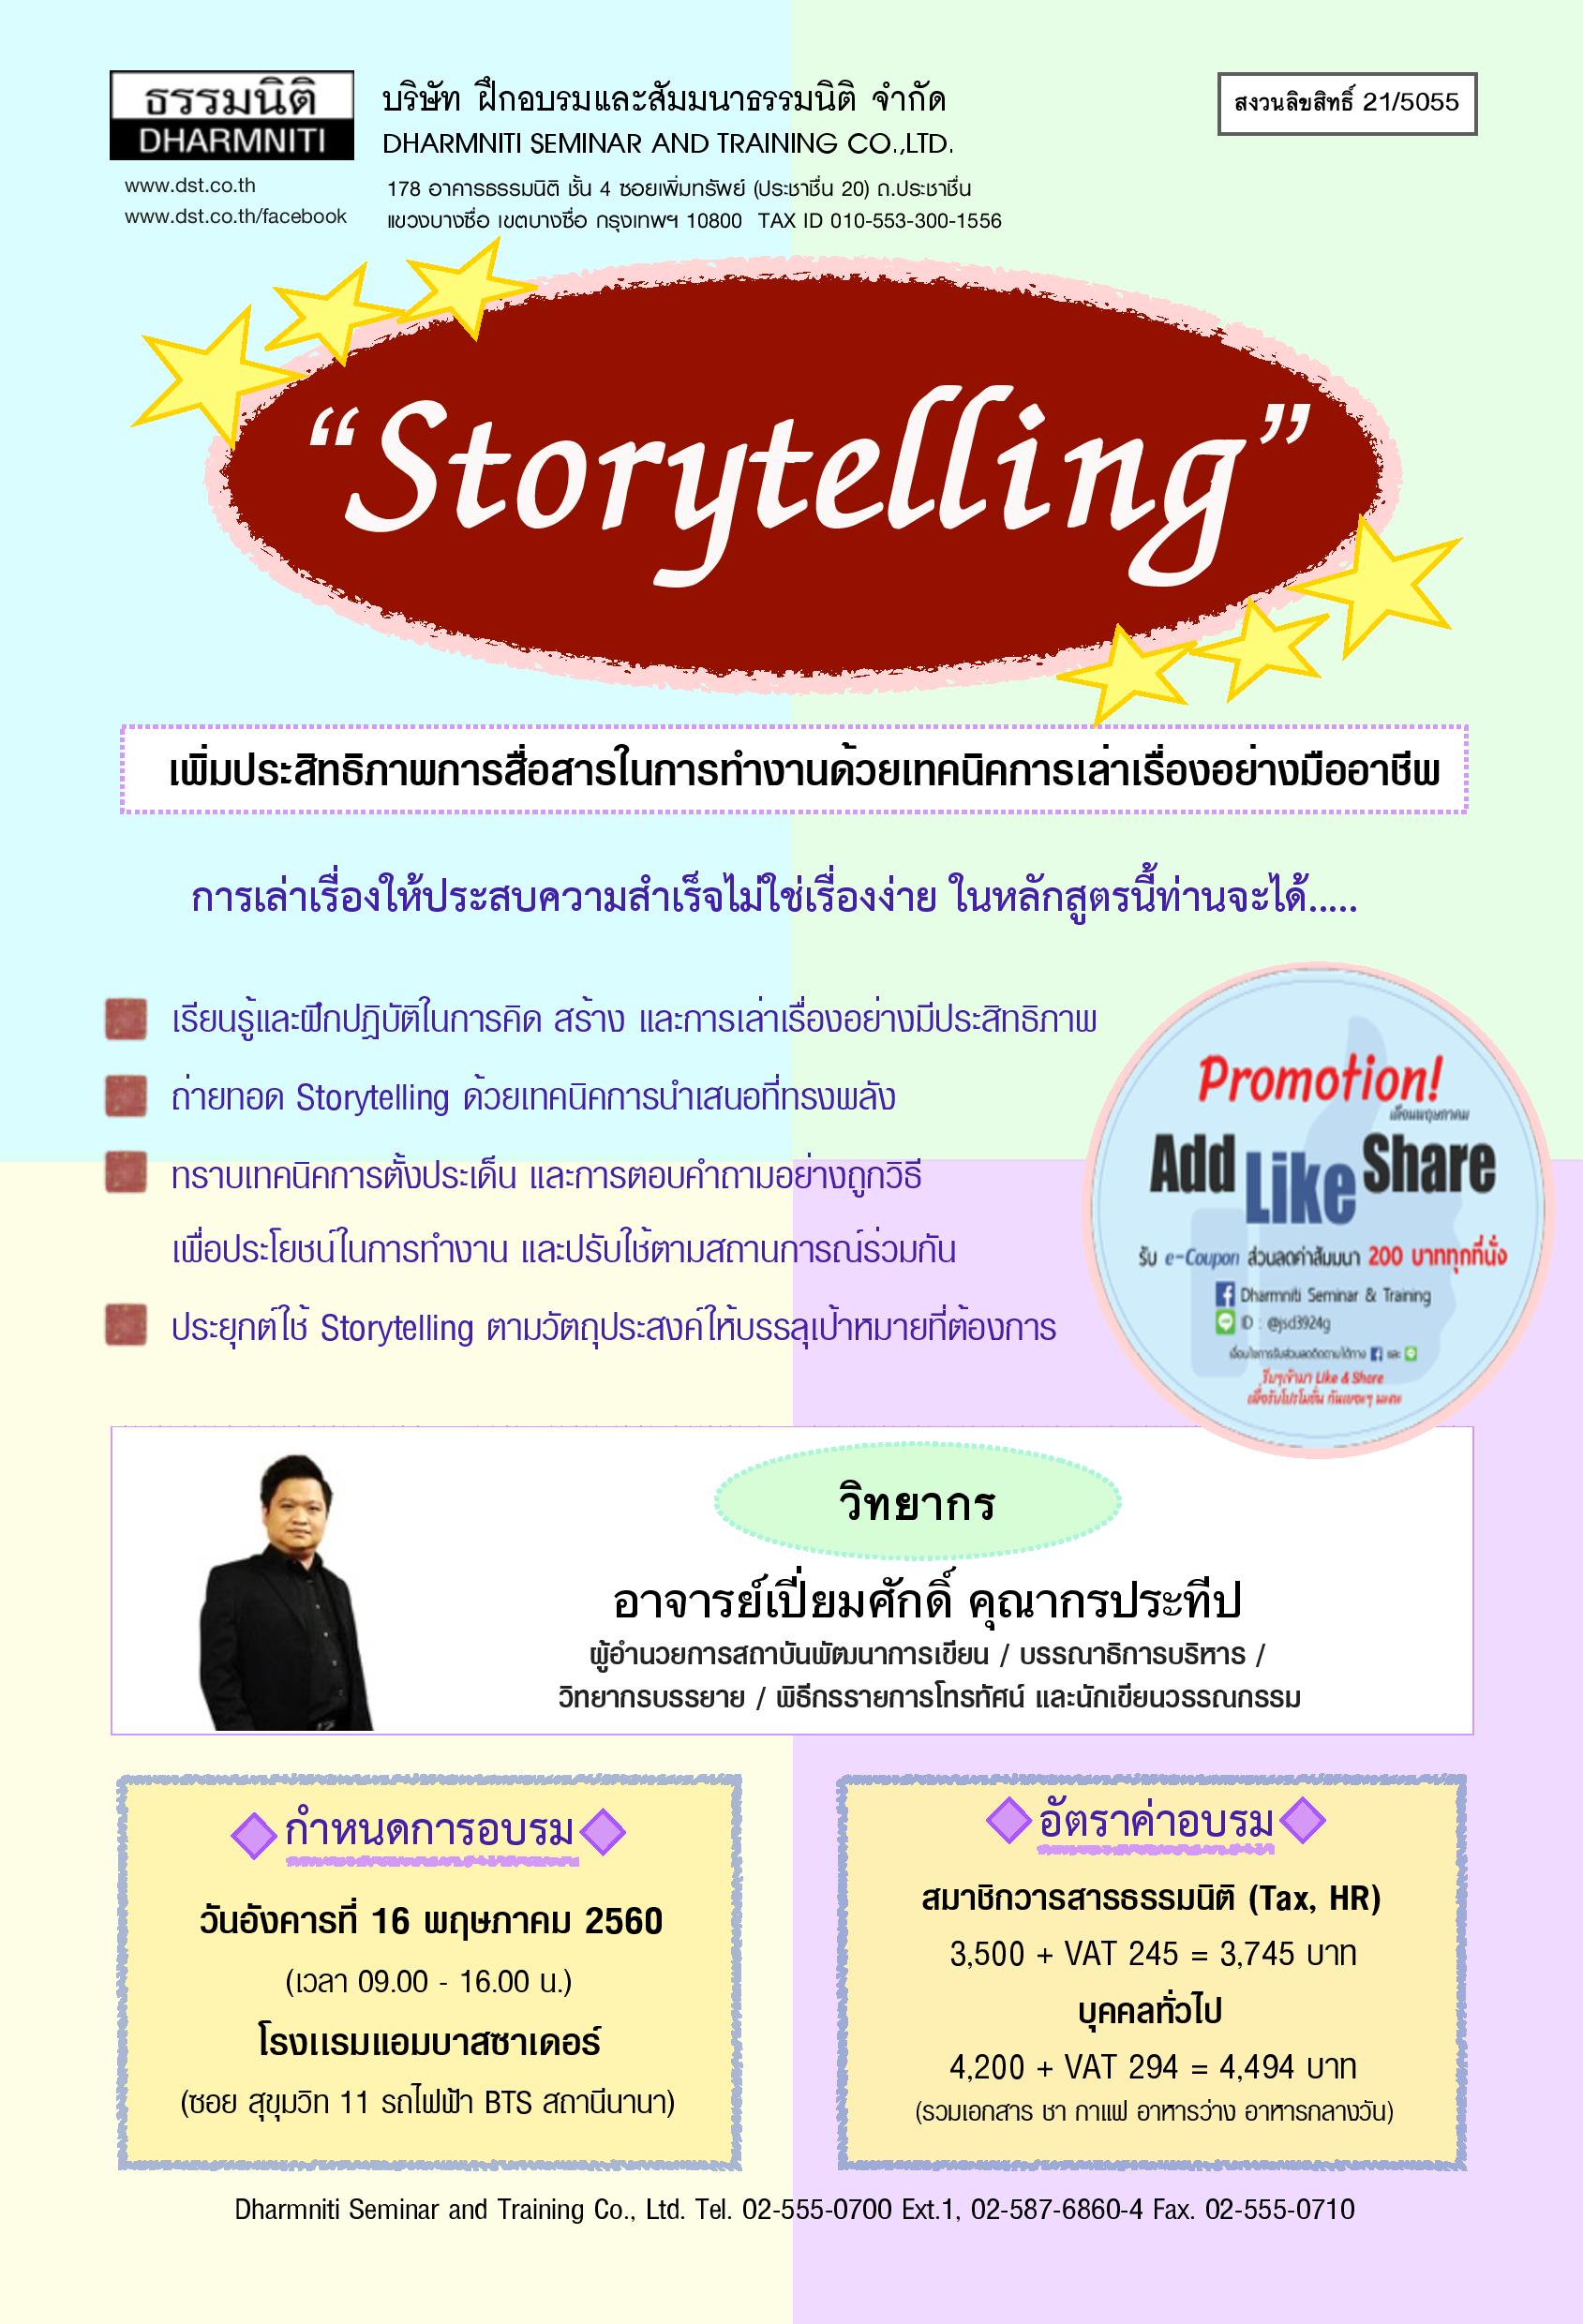 Storytelling เพิ่มประสิทธิภาพการสื่อสารในการทำงานด้วยเทคนิคการเล่าเรื่องอย่างมืออาชีพ